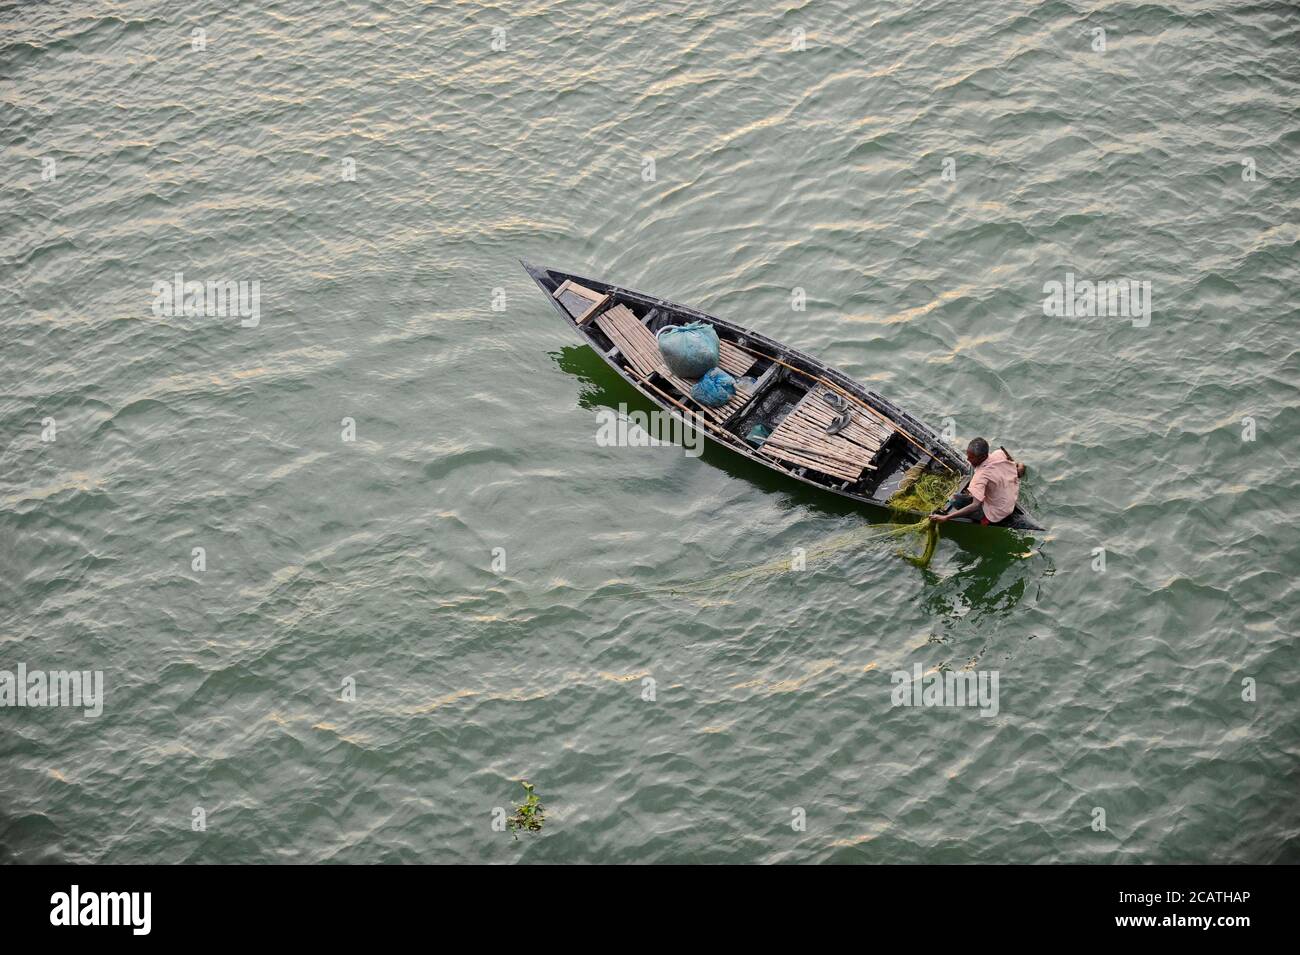 Un pêcheur a vu essayer de attraper un peu de poisson. Dans le delta du Ganga (Padma), les gens de Brahmaputra et de Meghna vivent sur l'eau. Banque D'Images